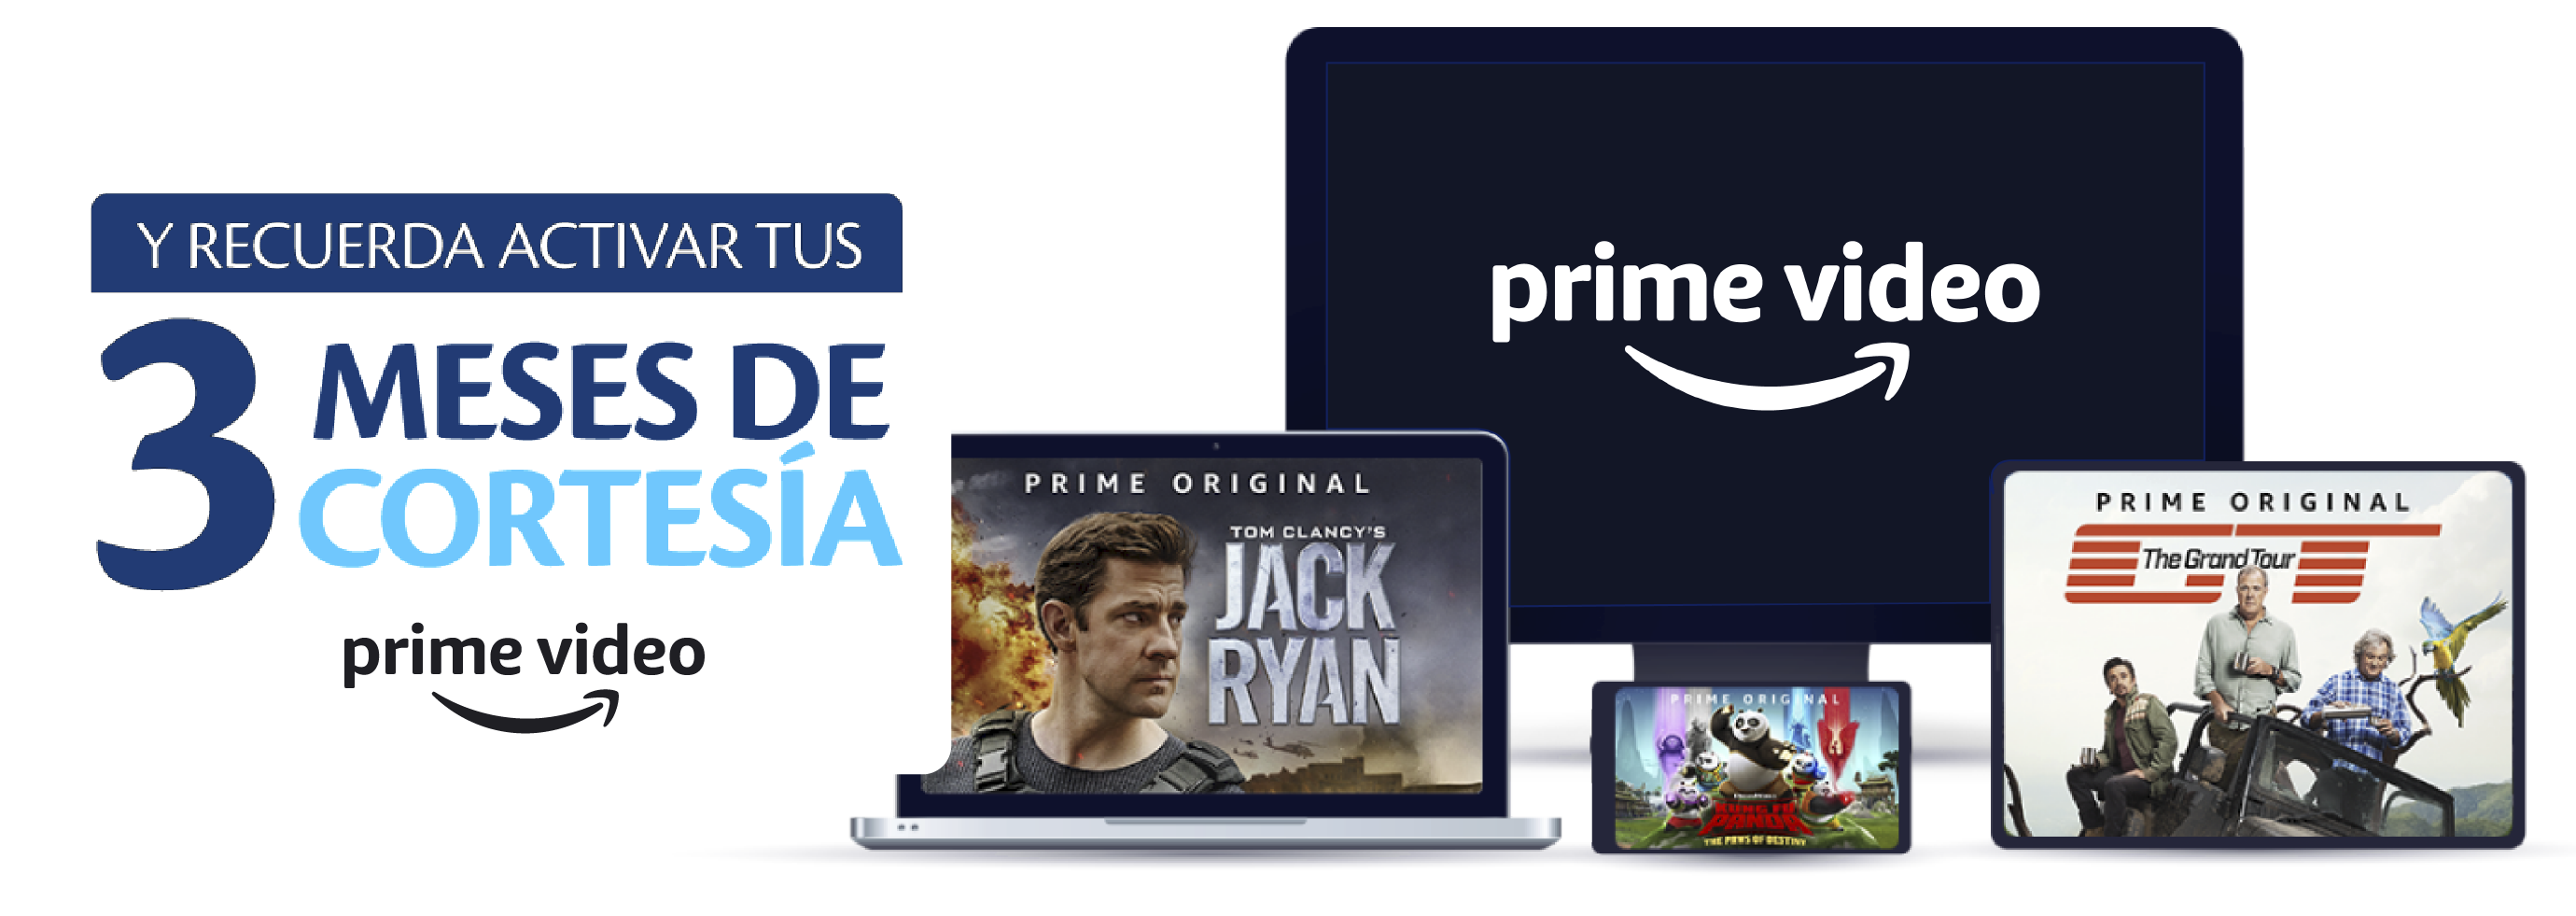 aw-Pago automatico de factura Tigo con promocion de Amazon Prime Video